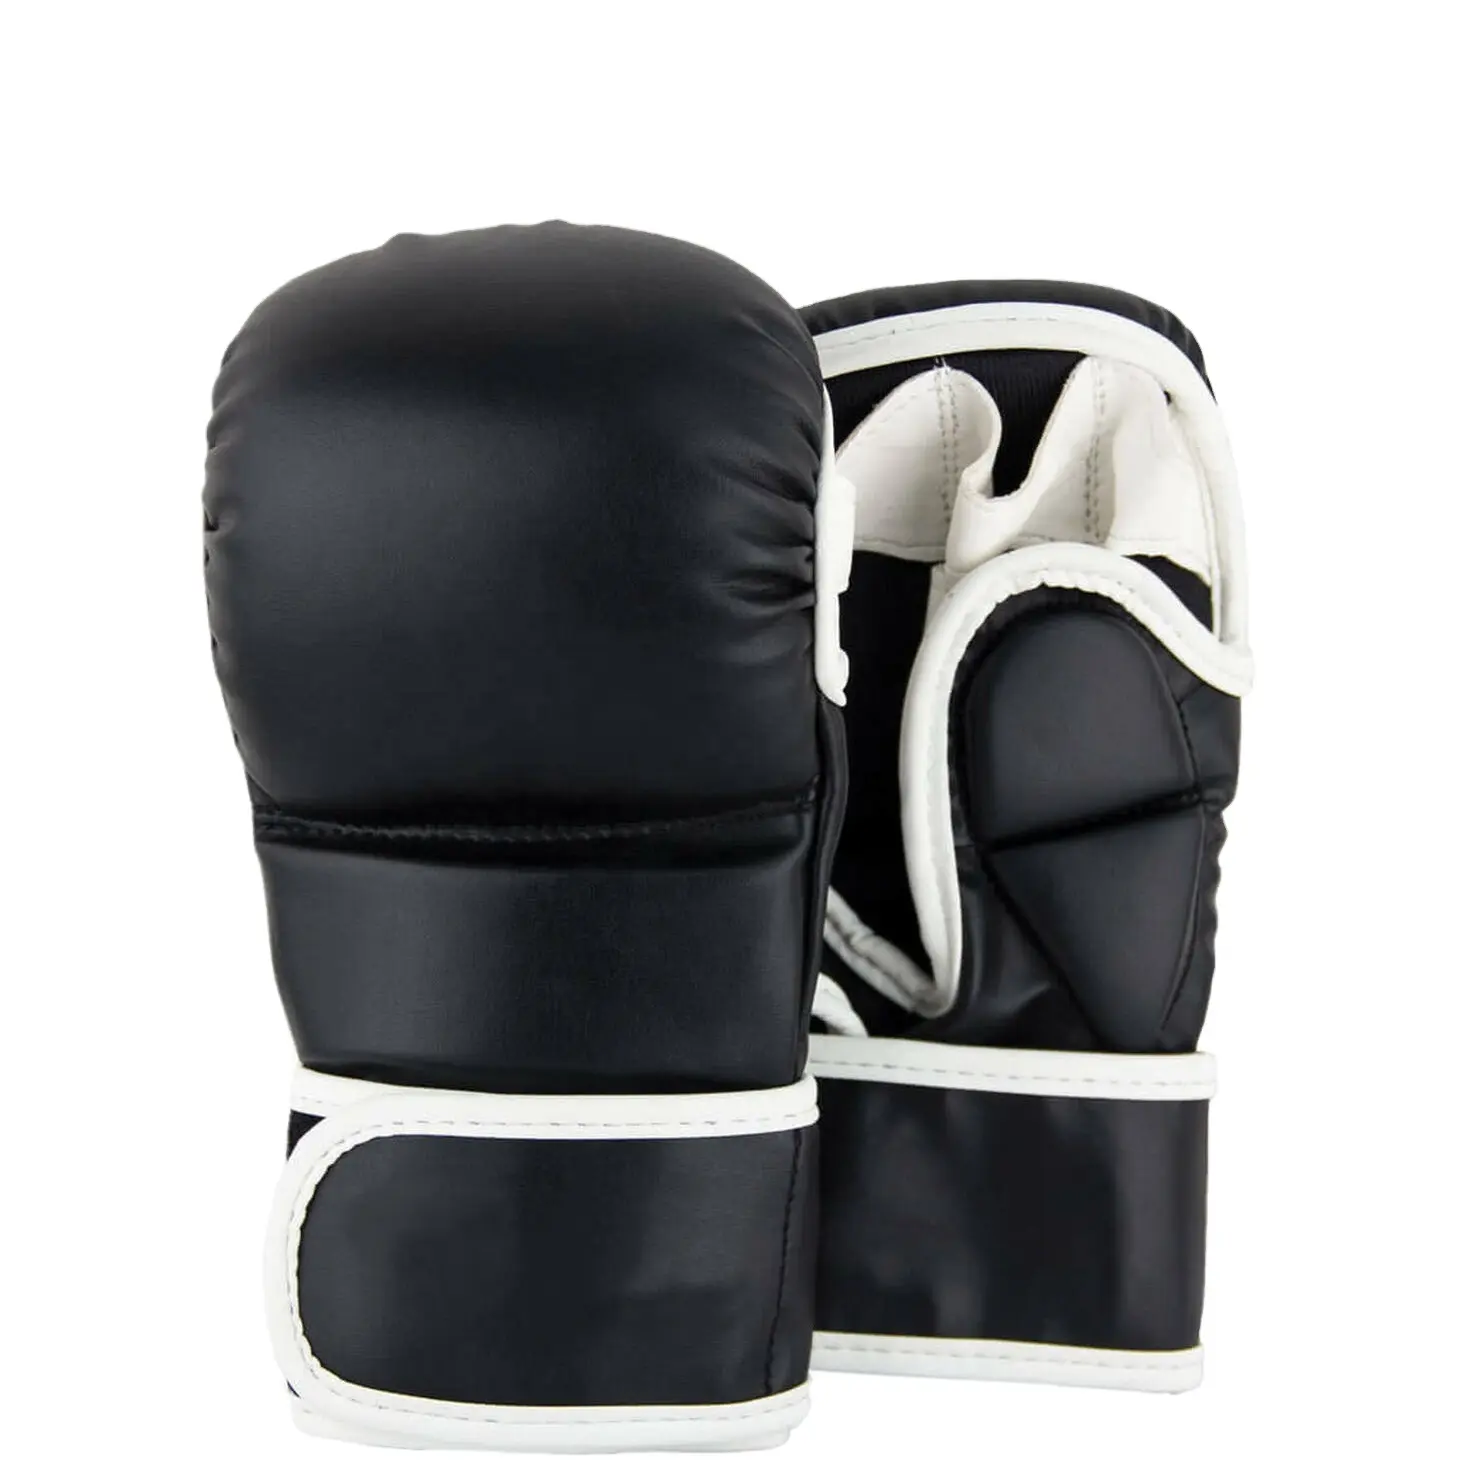 Guantes de artes marciales mixtas personalizados, manoplas profesionales de alta calidad, medio dedo, para boxeo, venta al por mayor